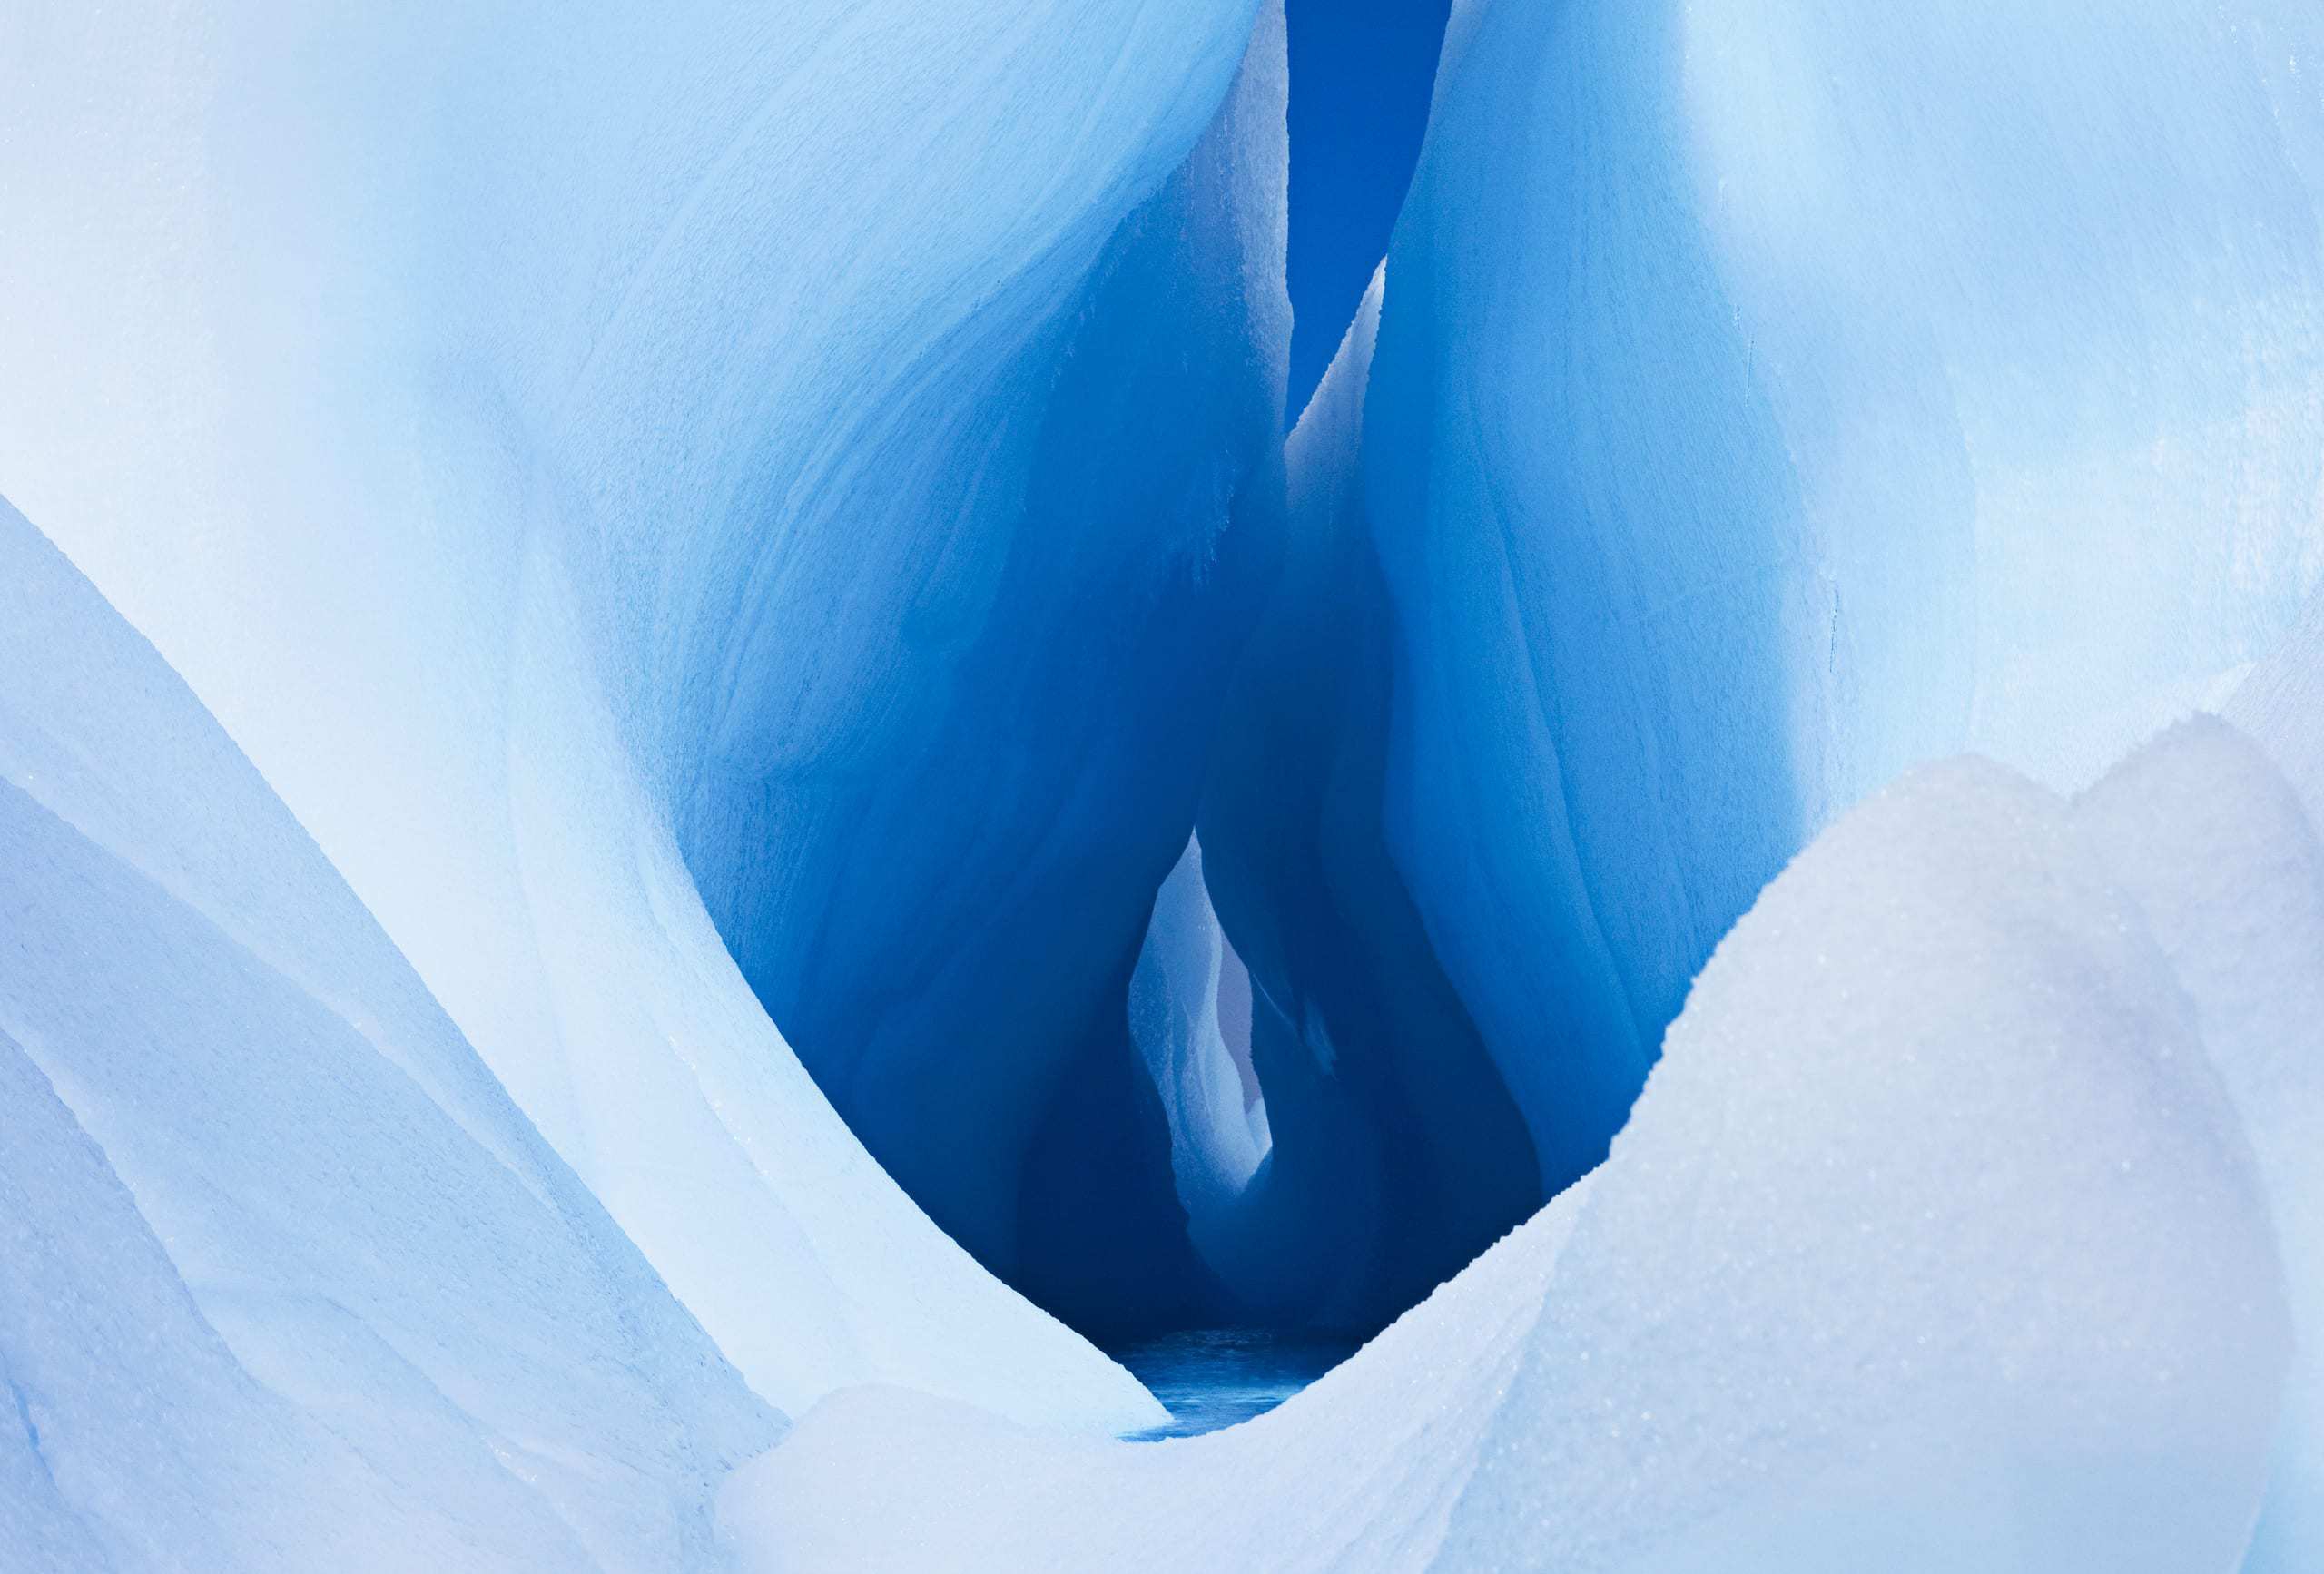 Eisriesenwelt Werfen - the largest ice cave in the world